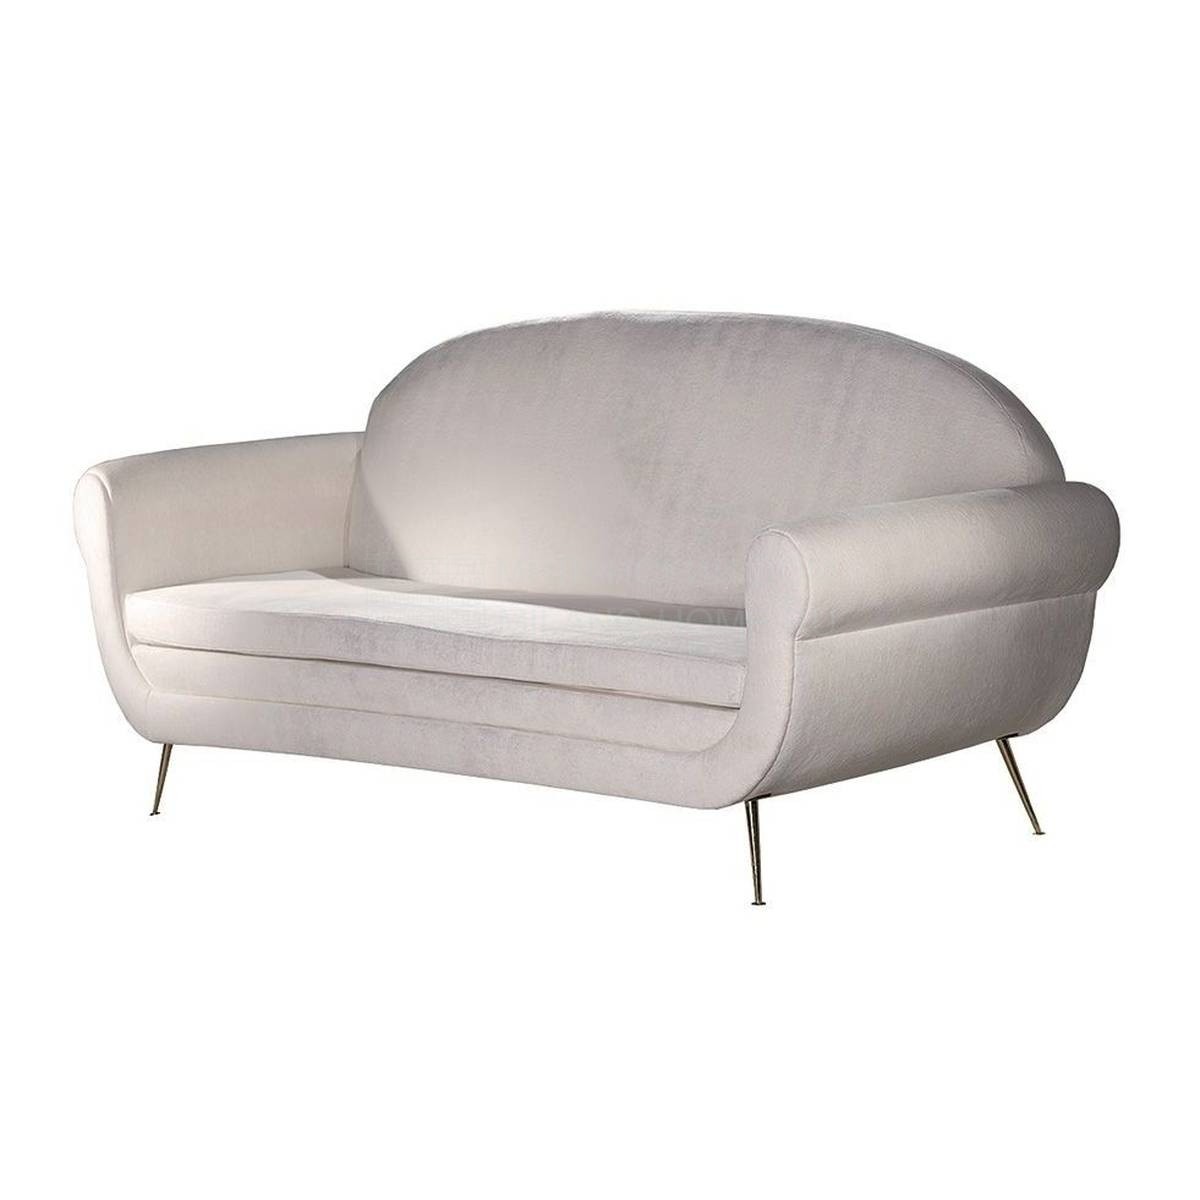 Прямой диван BH-660 sofa из Испании фабрики GUADARTE